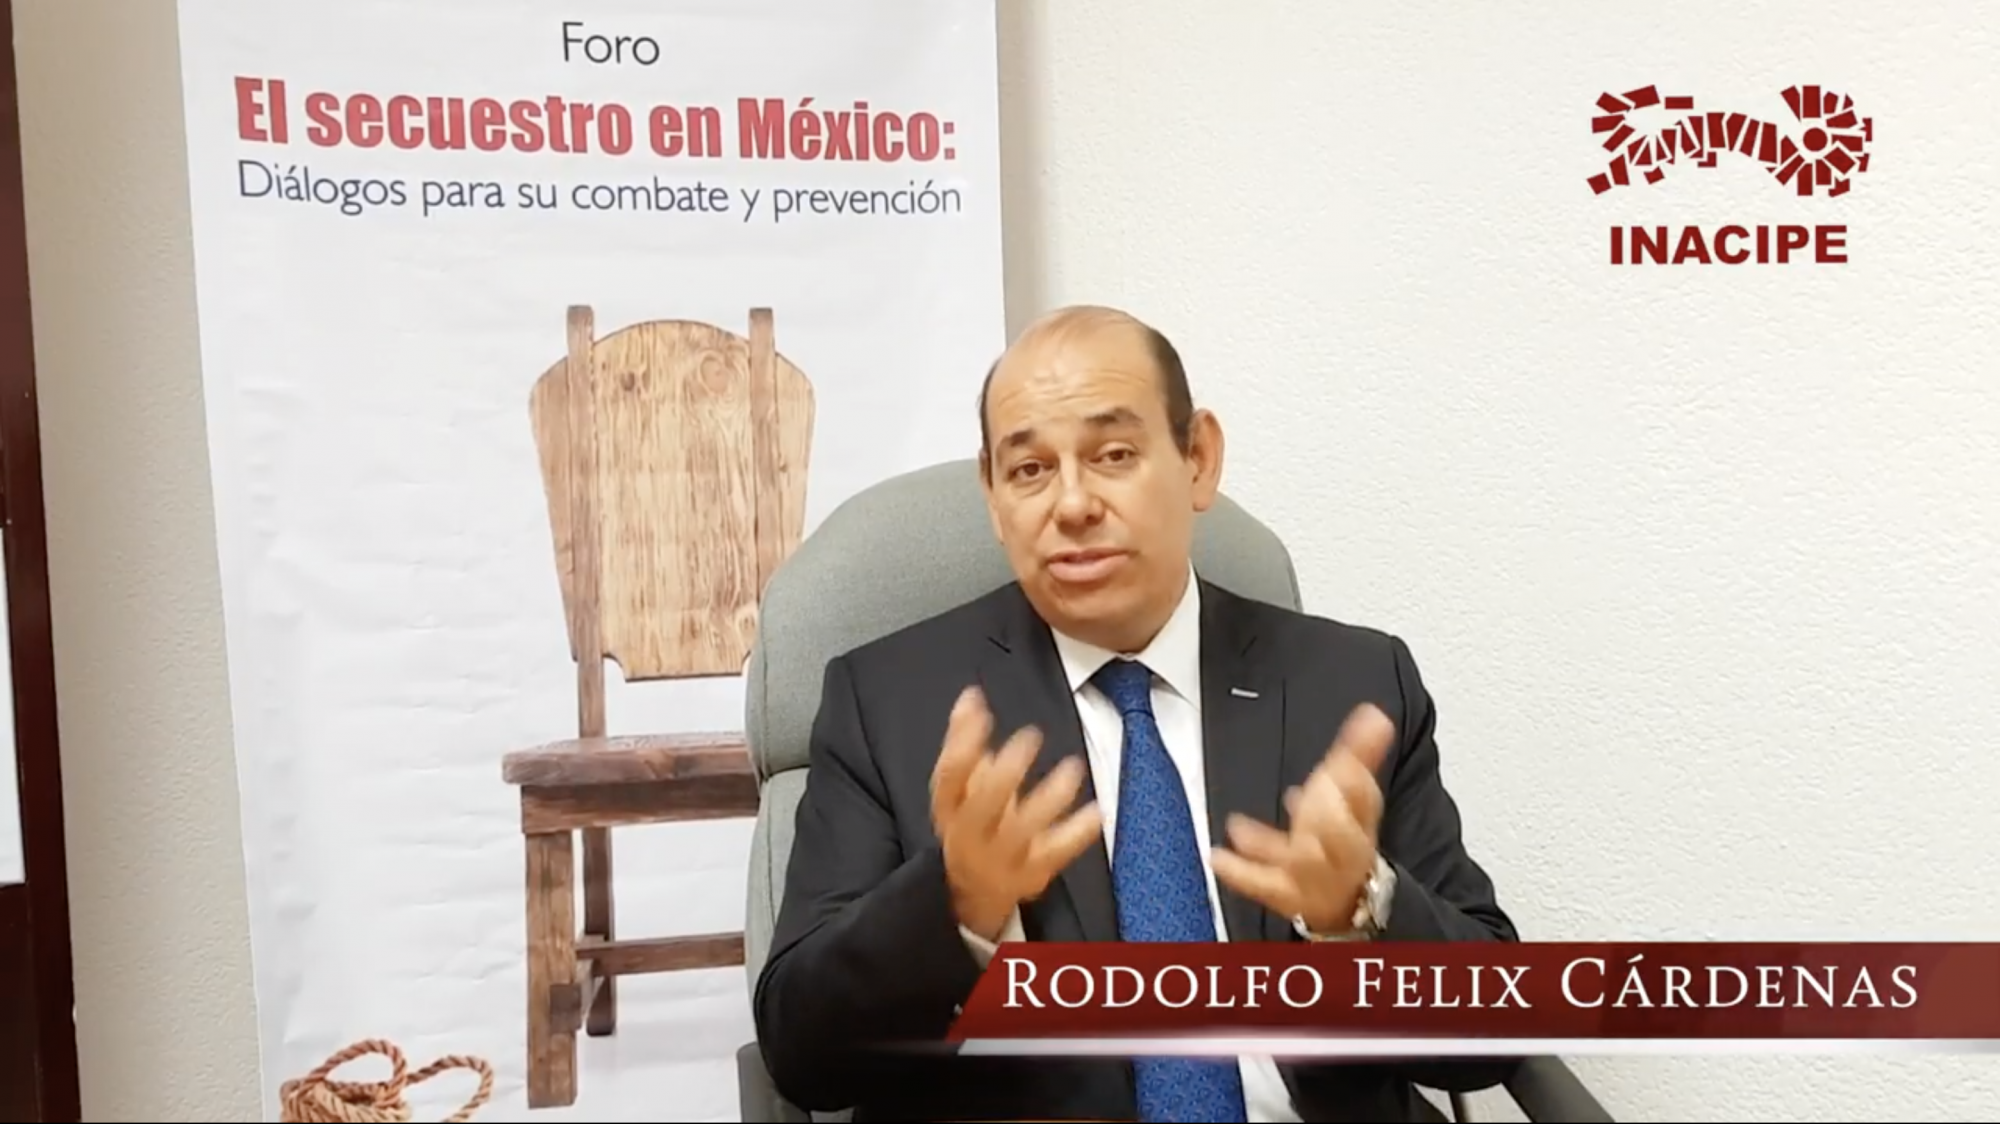 Rodolfo Felix Cárdenas: Retos y perspectivas jurídicas frente a los delitos en materia de secuestro